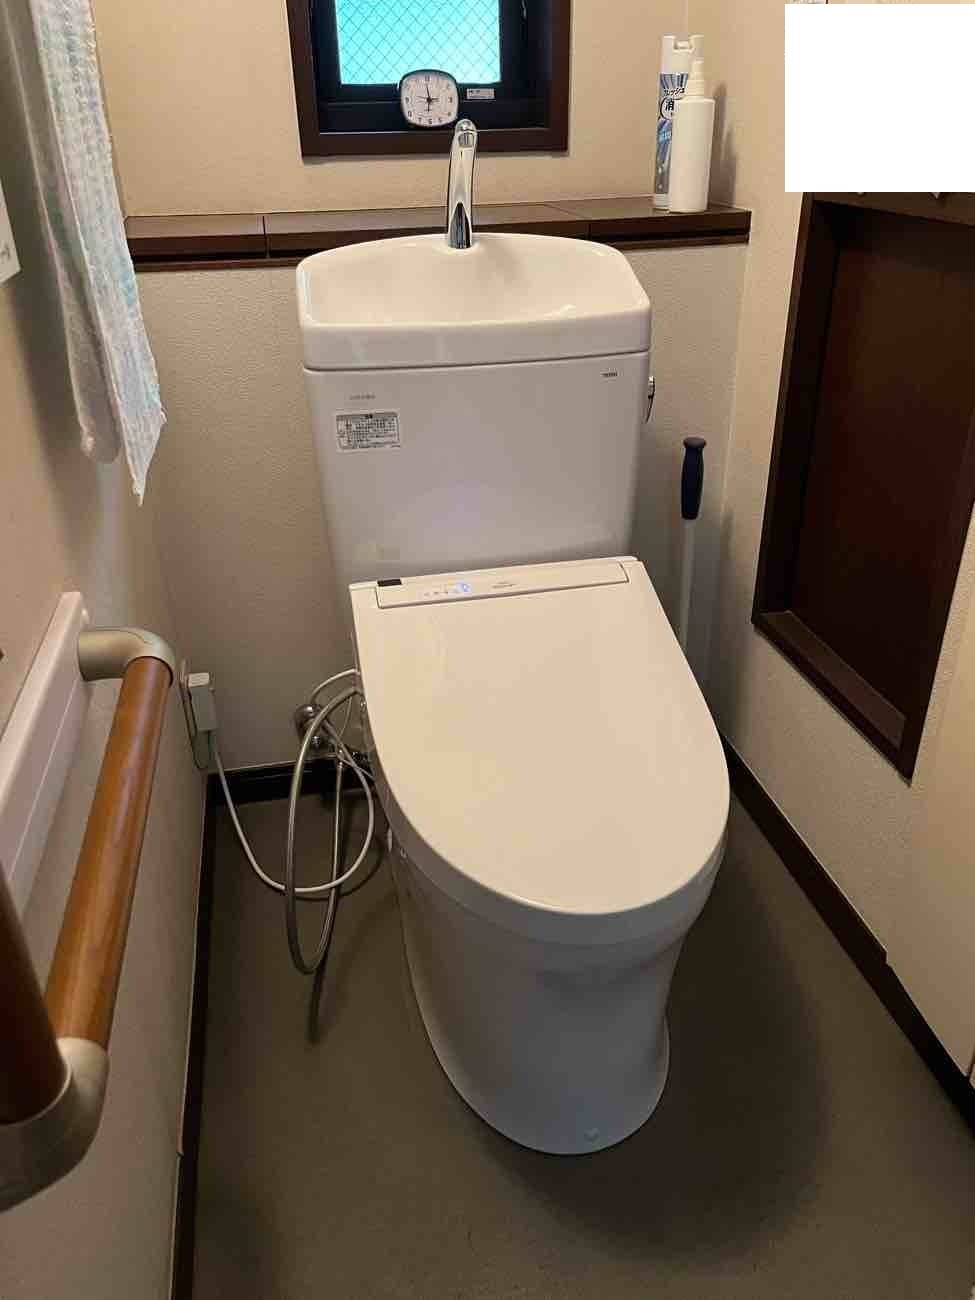 【埼玉県吉川市】H様邸トイレ交換工事が完了しました。TOTO ピュアレストQR 画像